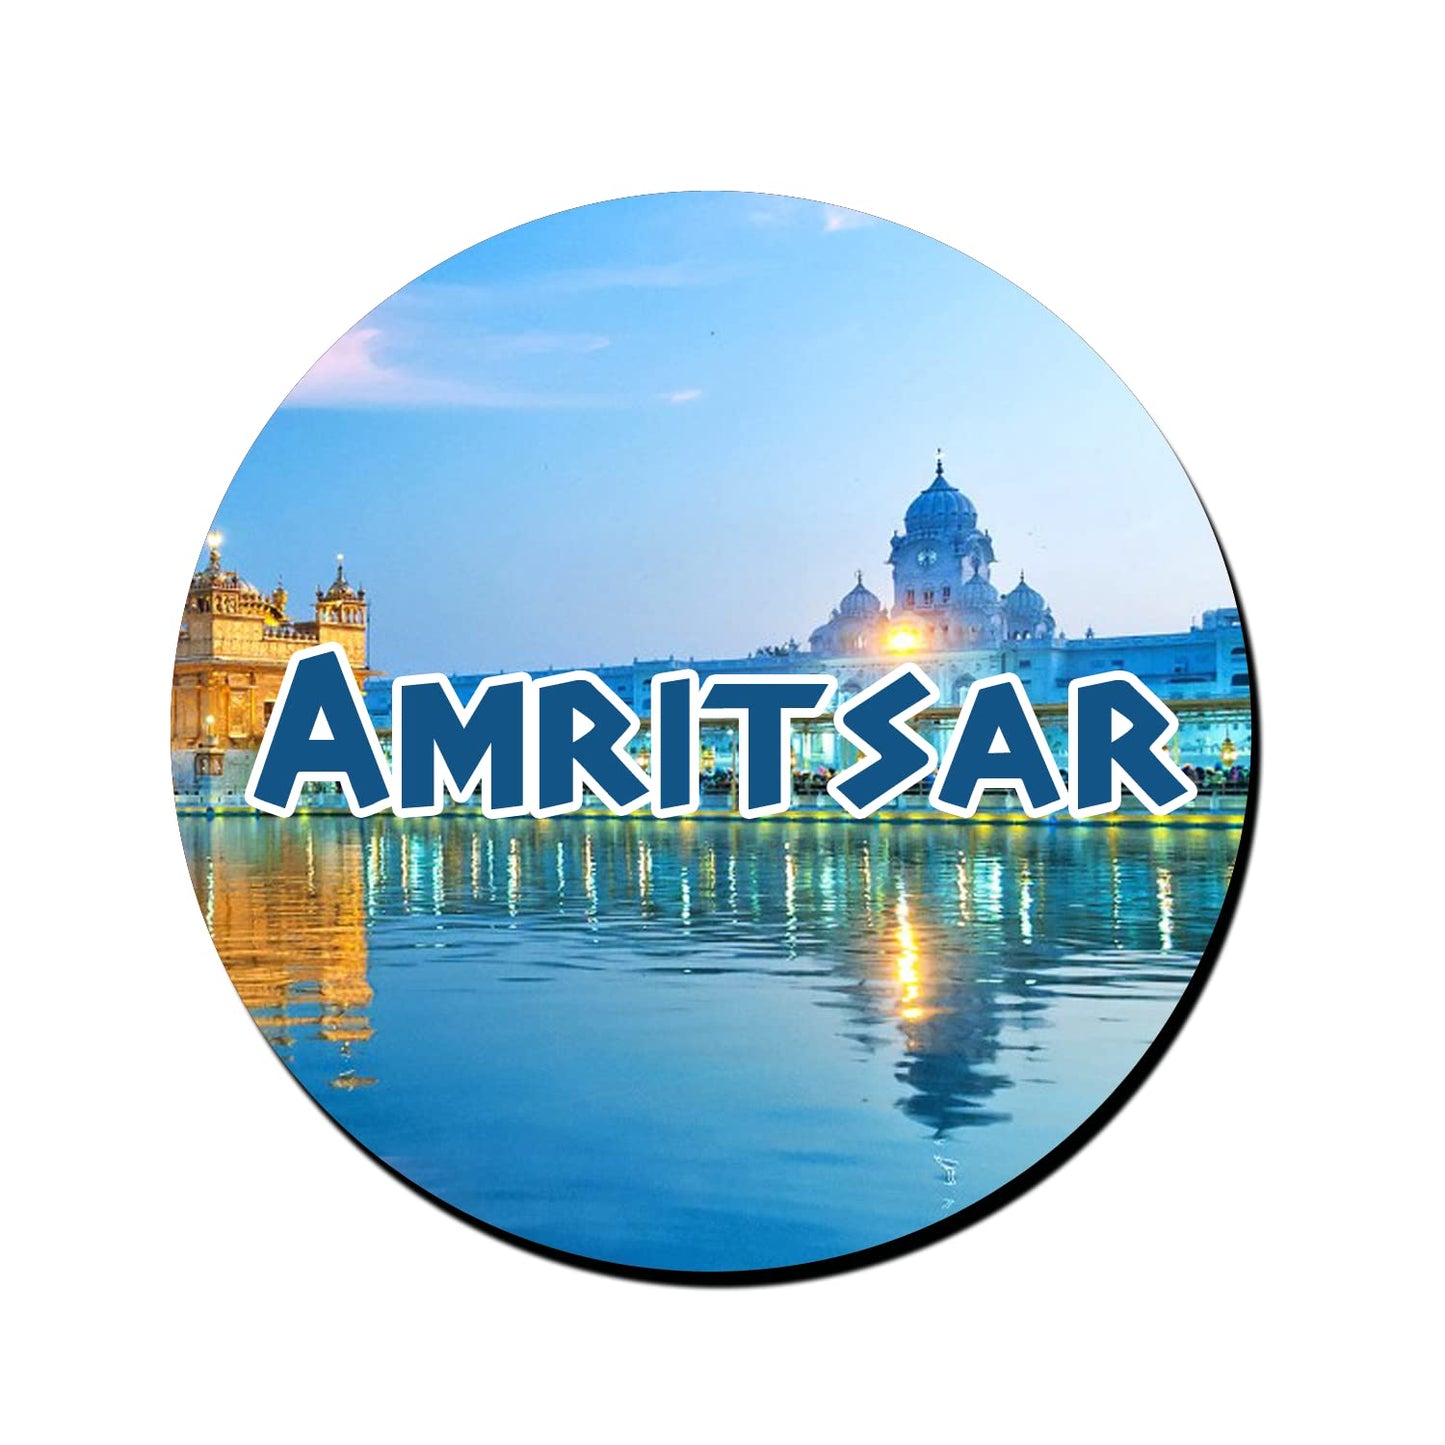 ShopTwiz Amritsar Travel Decorative Large Fridge Magnet